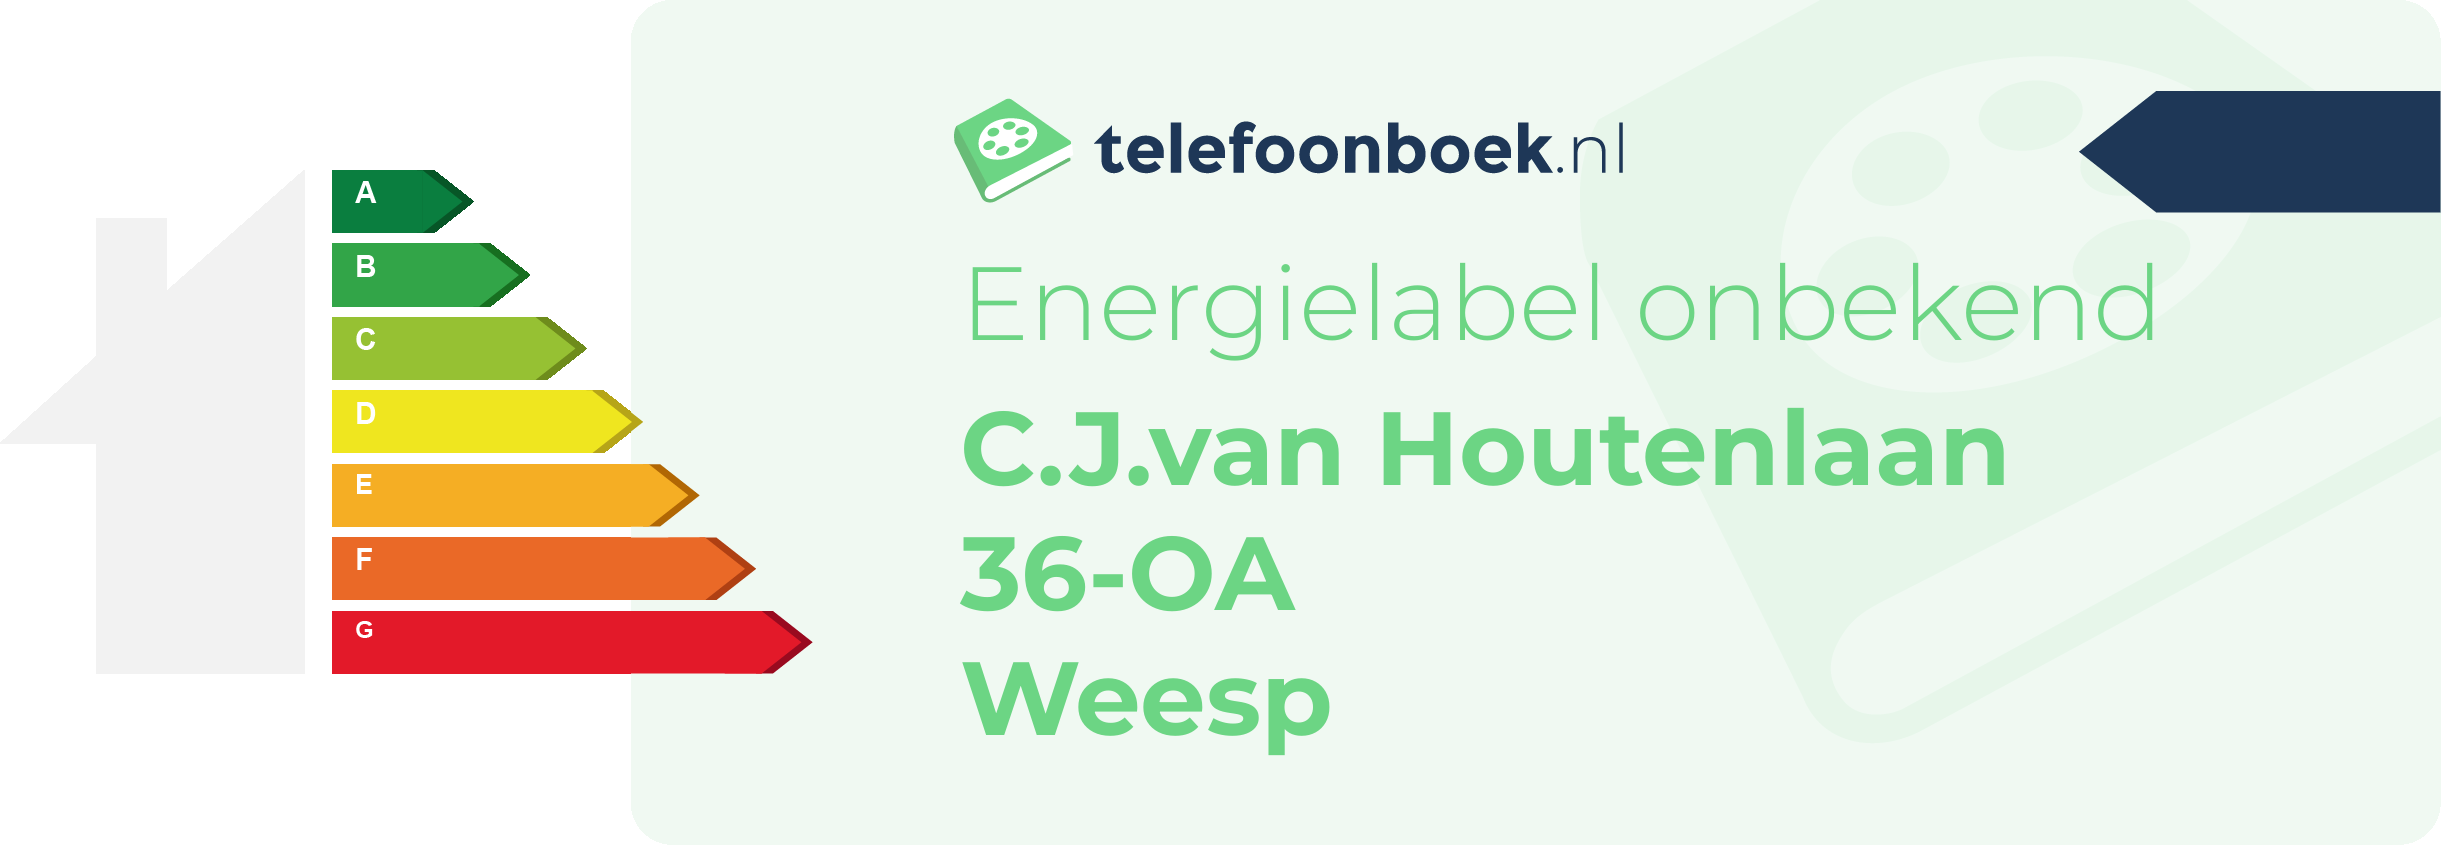 Energielabel C.J.van Houtenlaan 36-OA Weesp